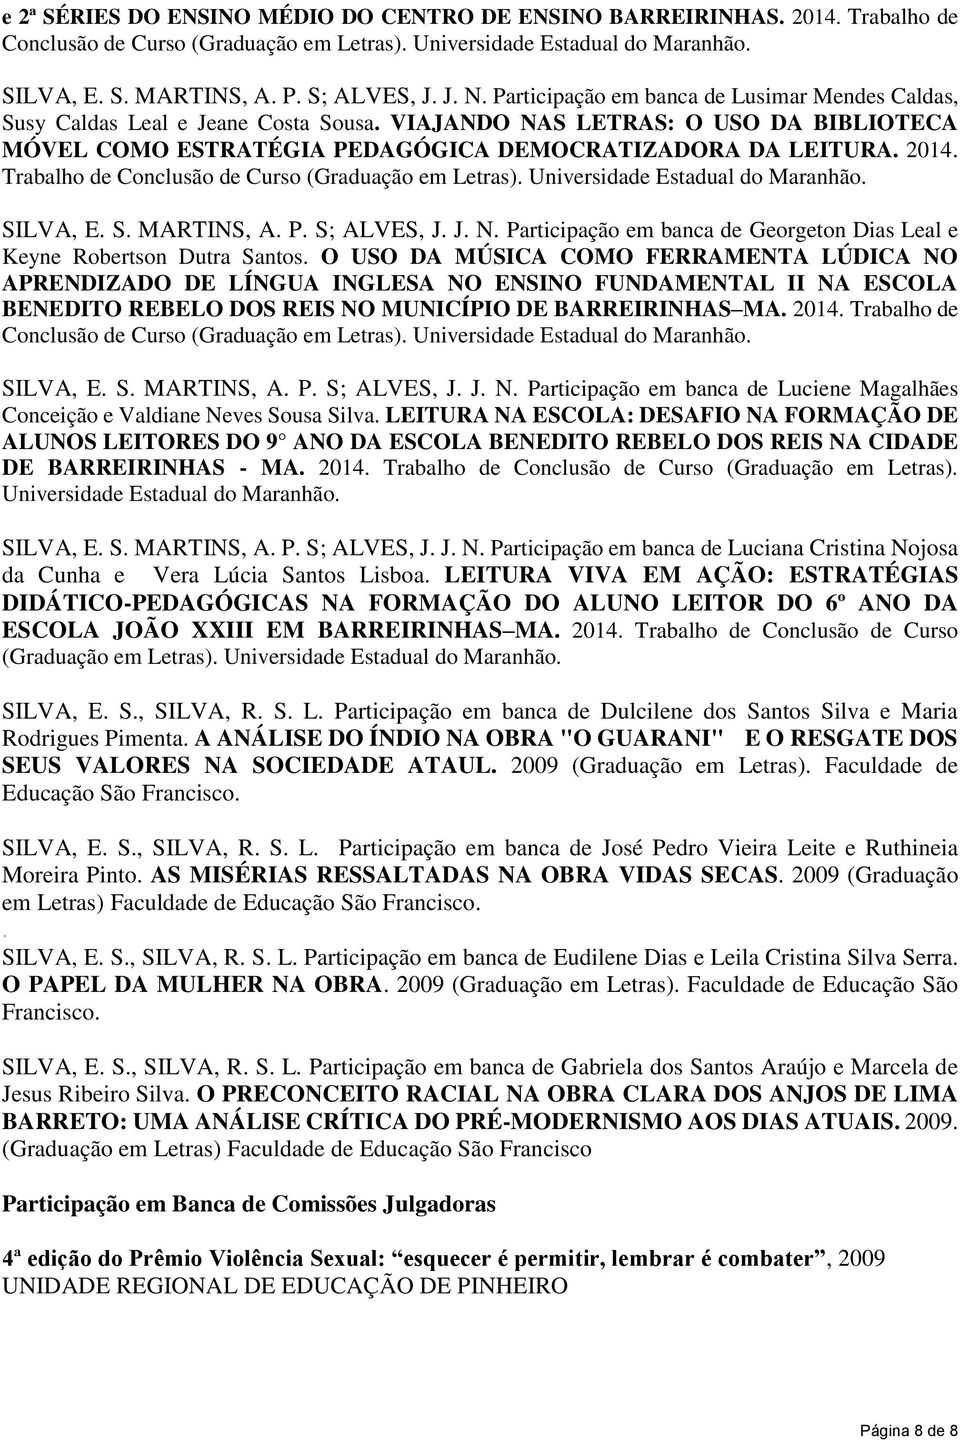 Trabalho de Conclusão de Curso (Graduação em Letras). Universidade Estadual do Maranhão. SILVA, E. S. MARTINS, A. P. S; ALVES, J. J. N.